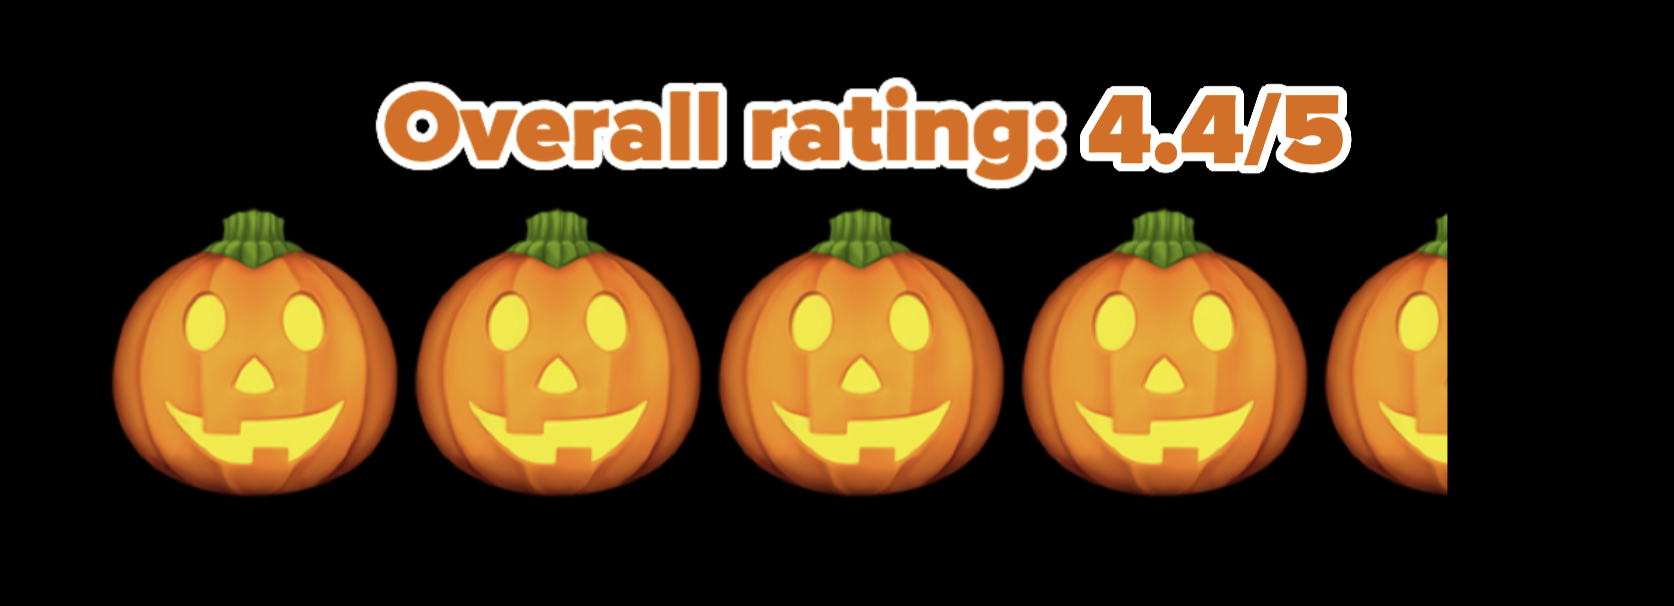 4.4/5 pumpkin rating